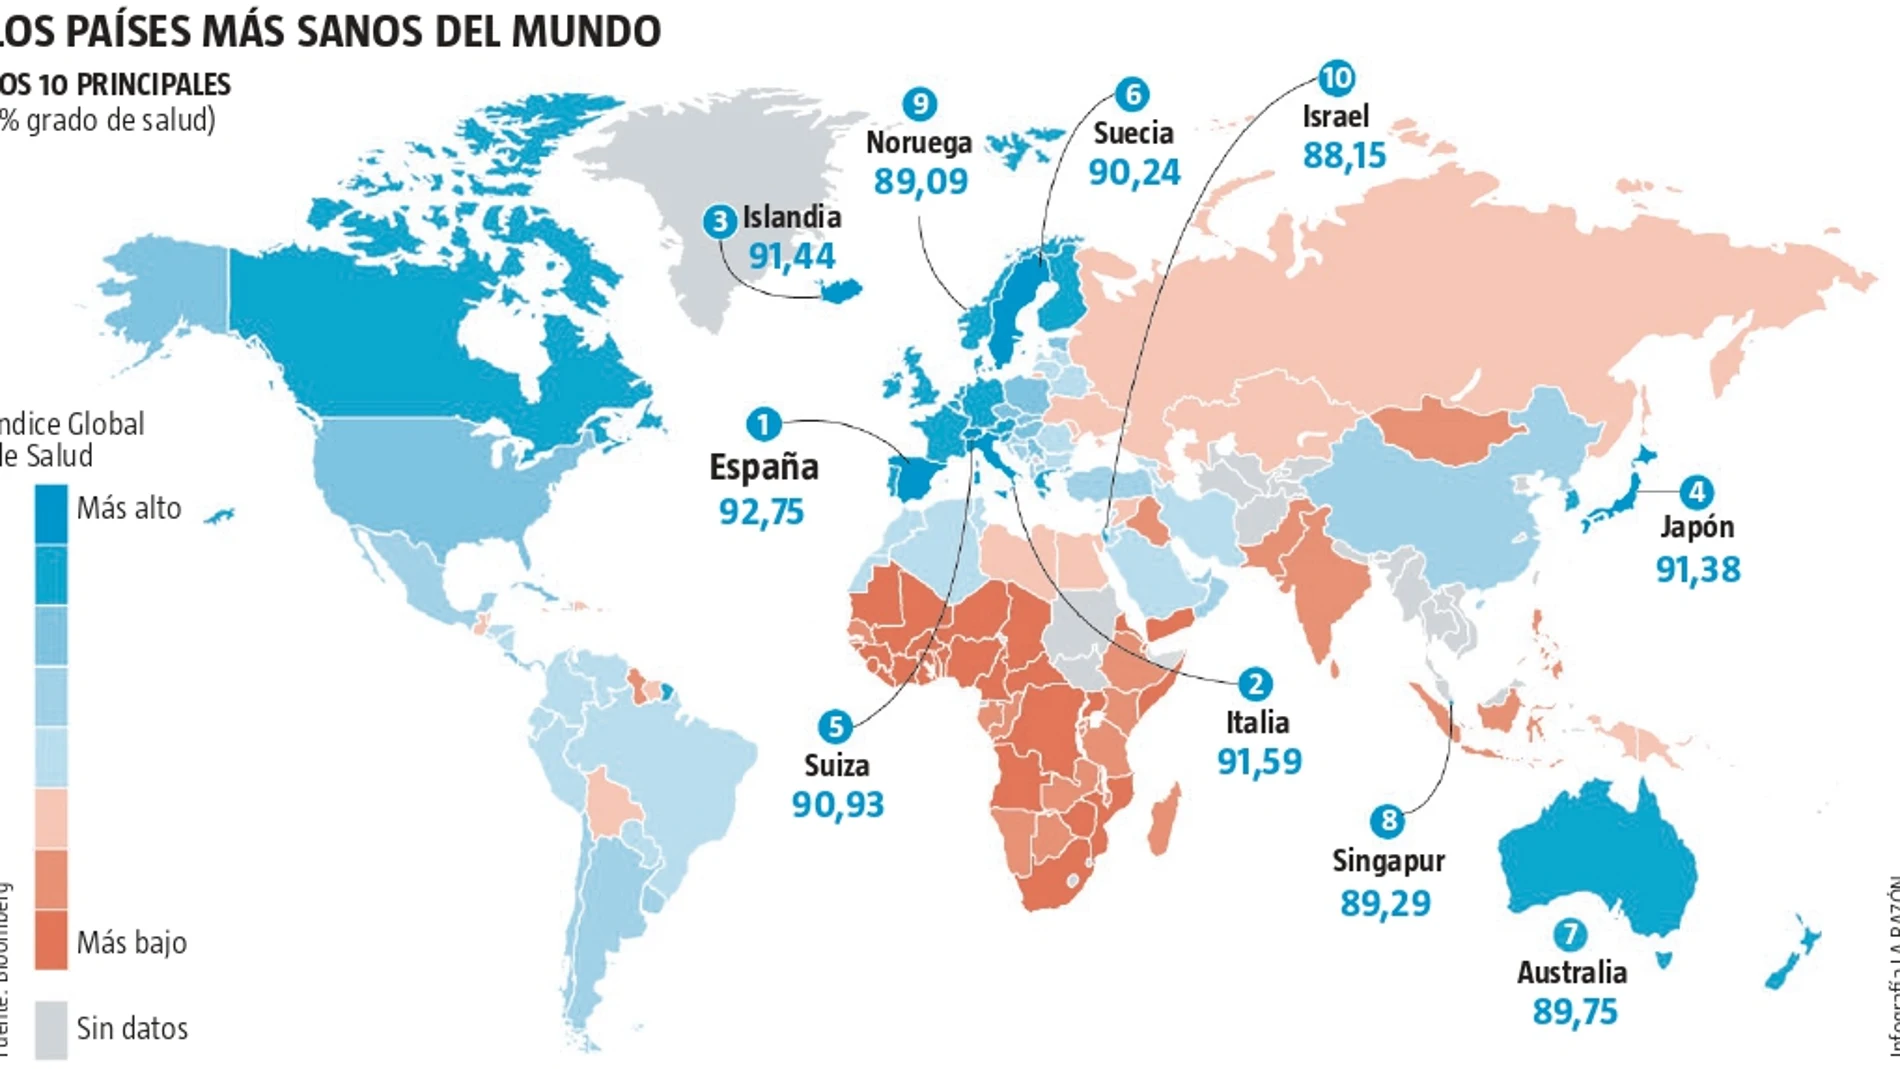 España es el país más saludable del mundo para vivir según un informe publicado por la agencia estadounidense Bloomberg